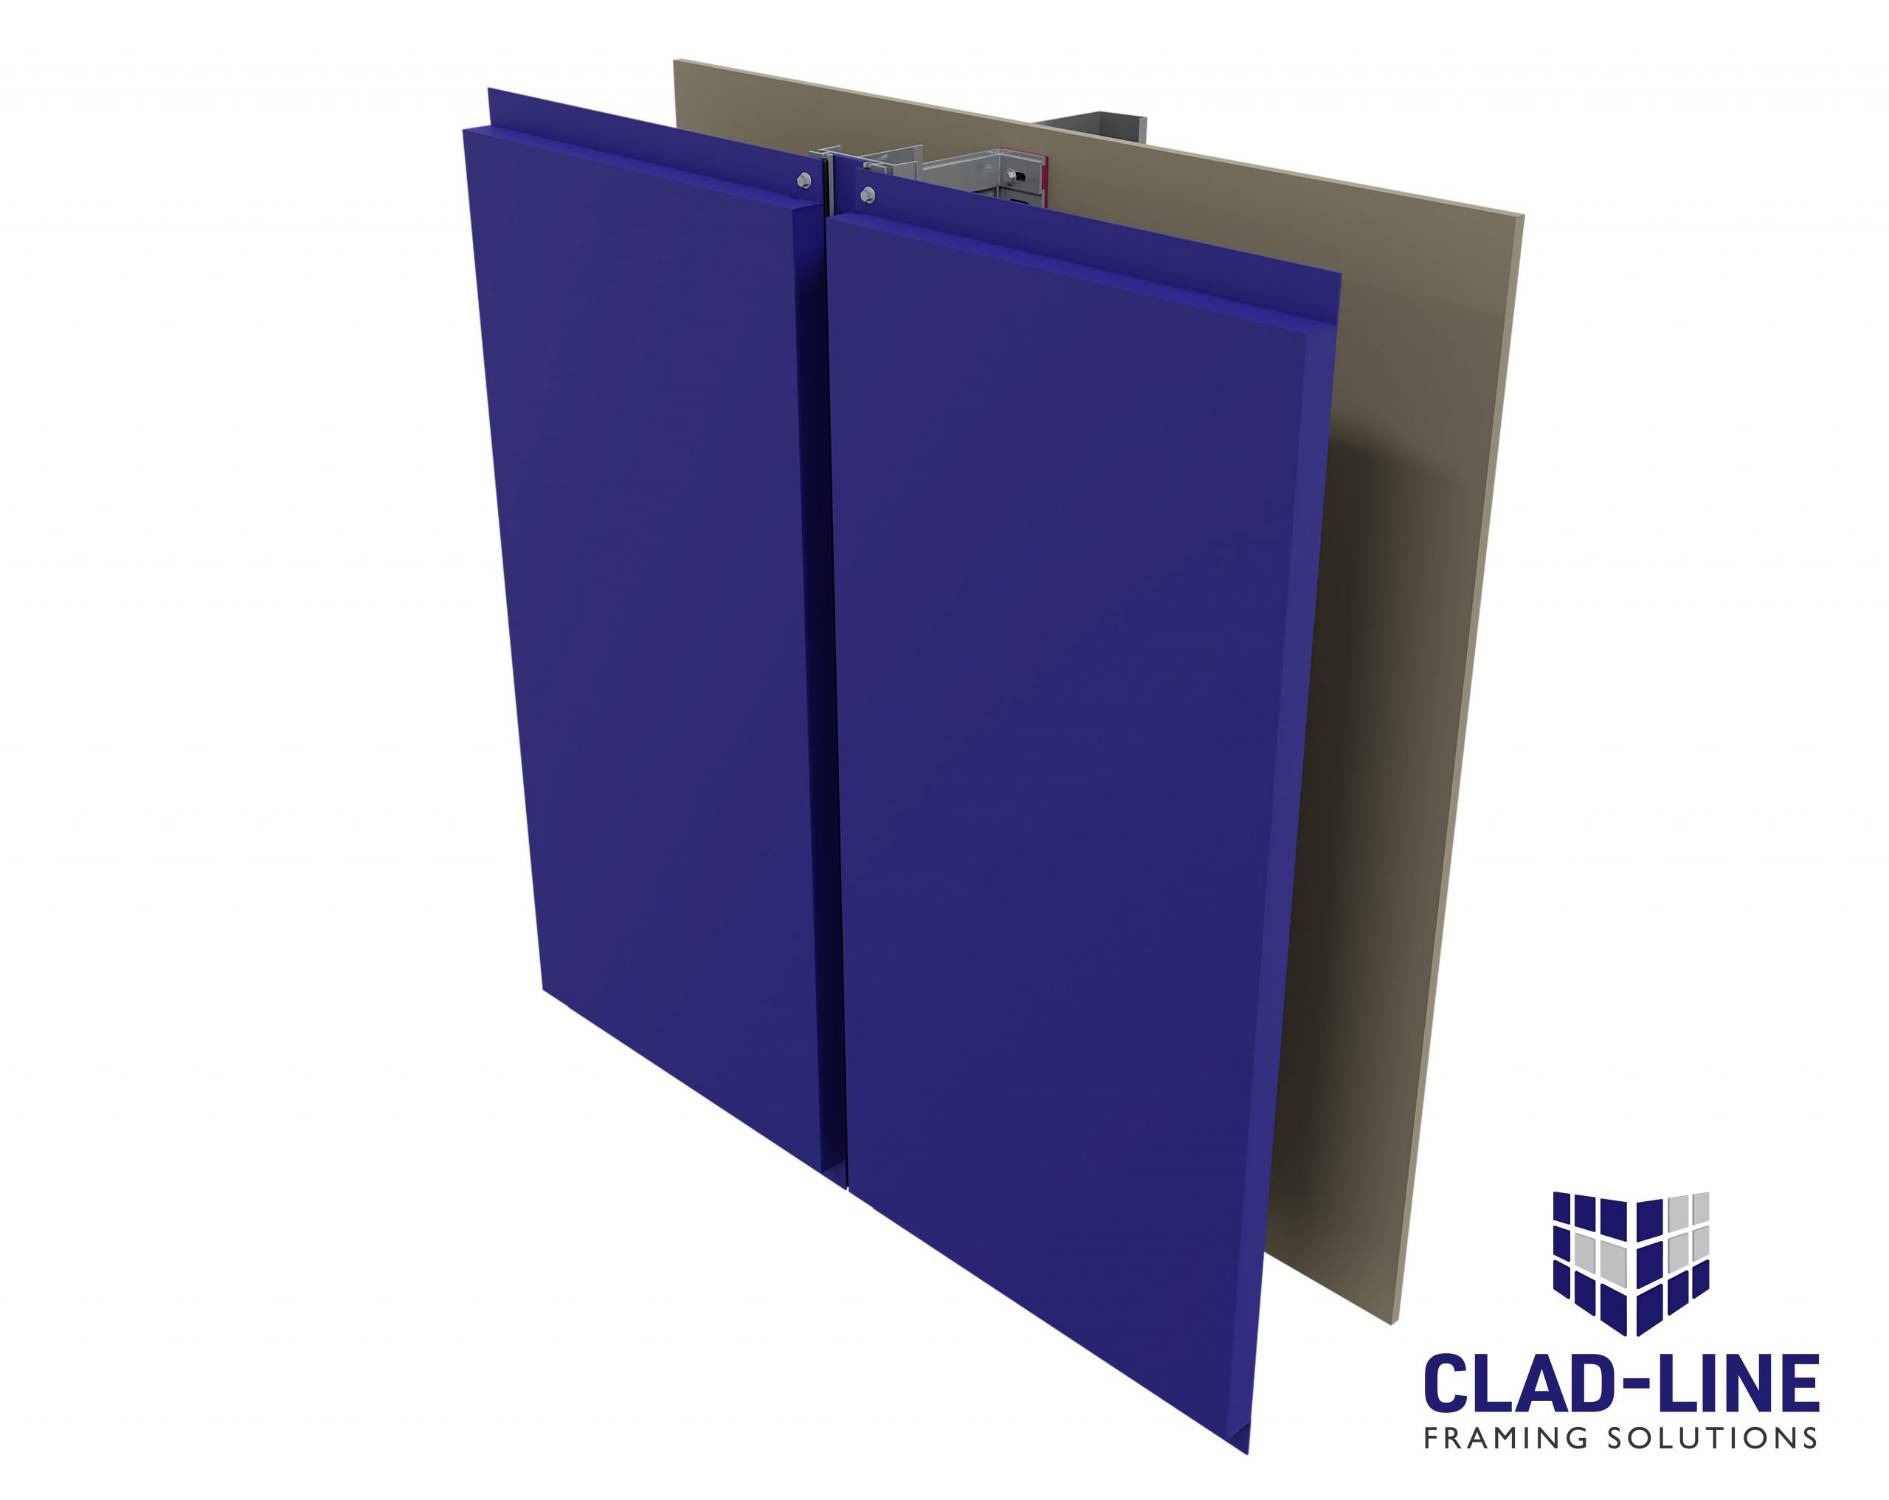 CLAD-LINE CL2 Framing System